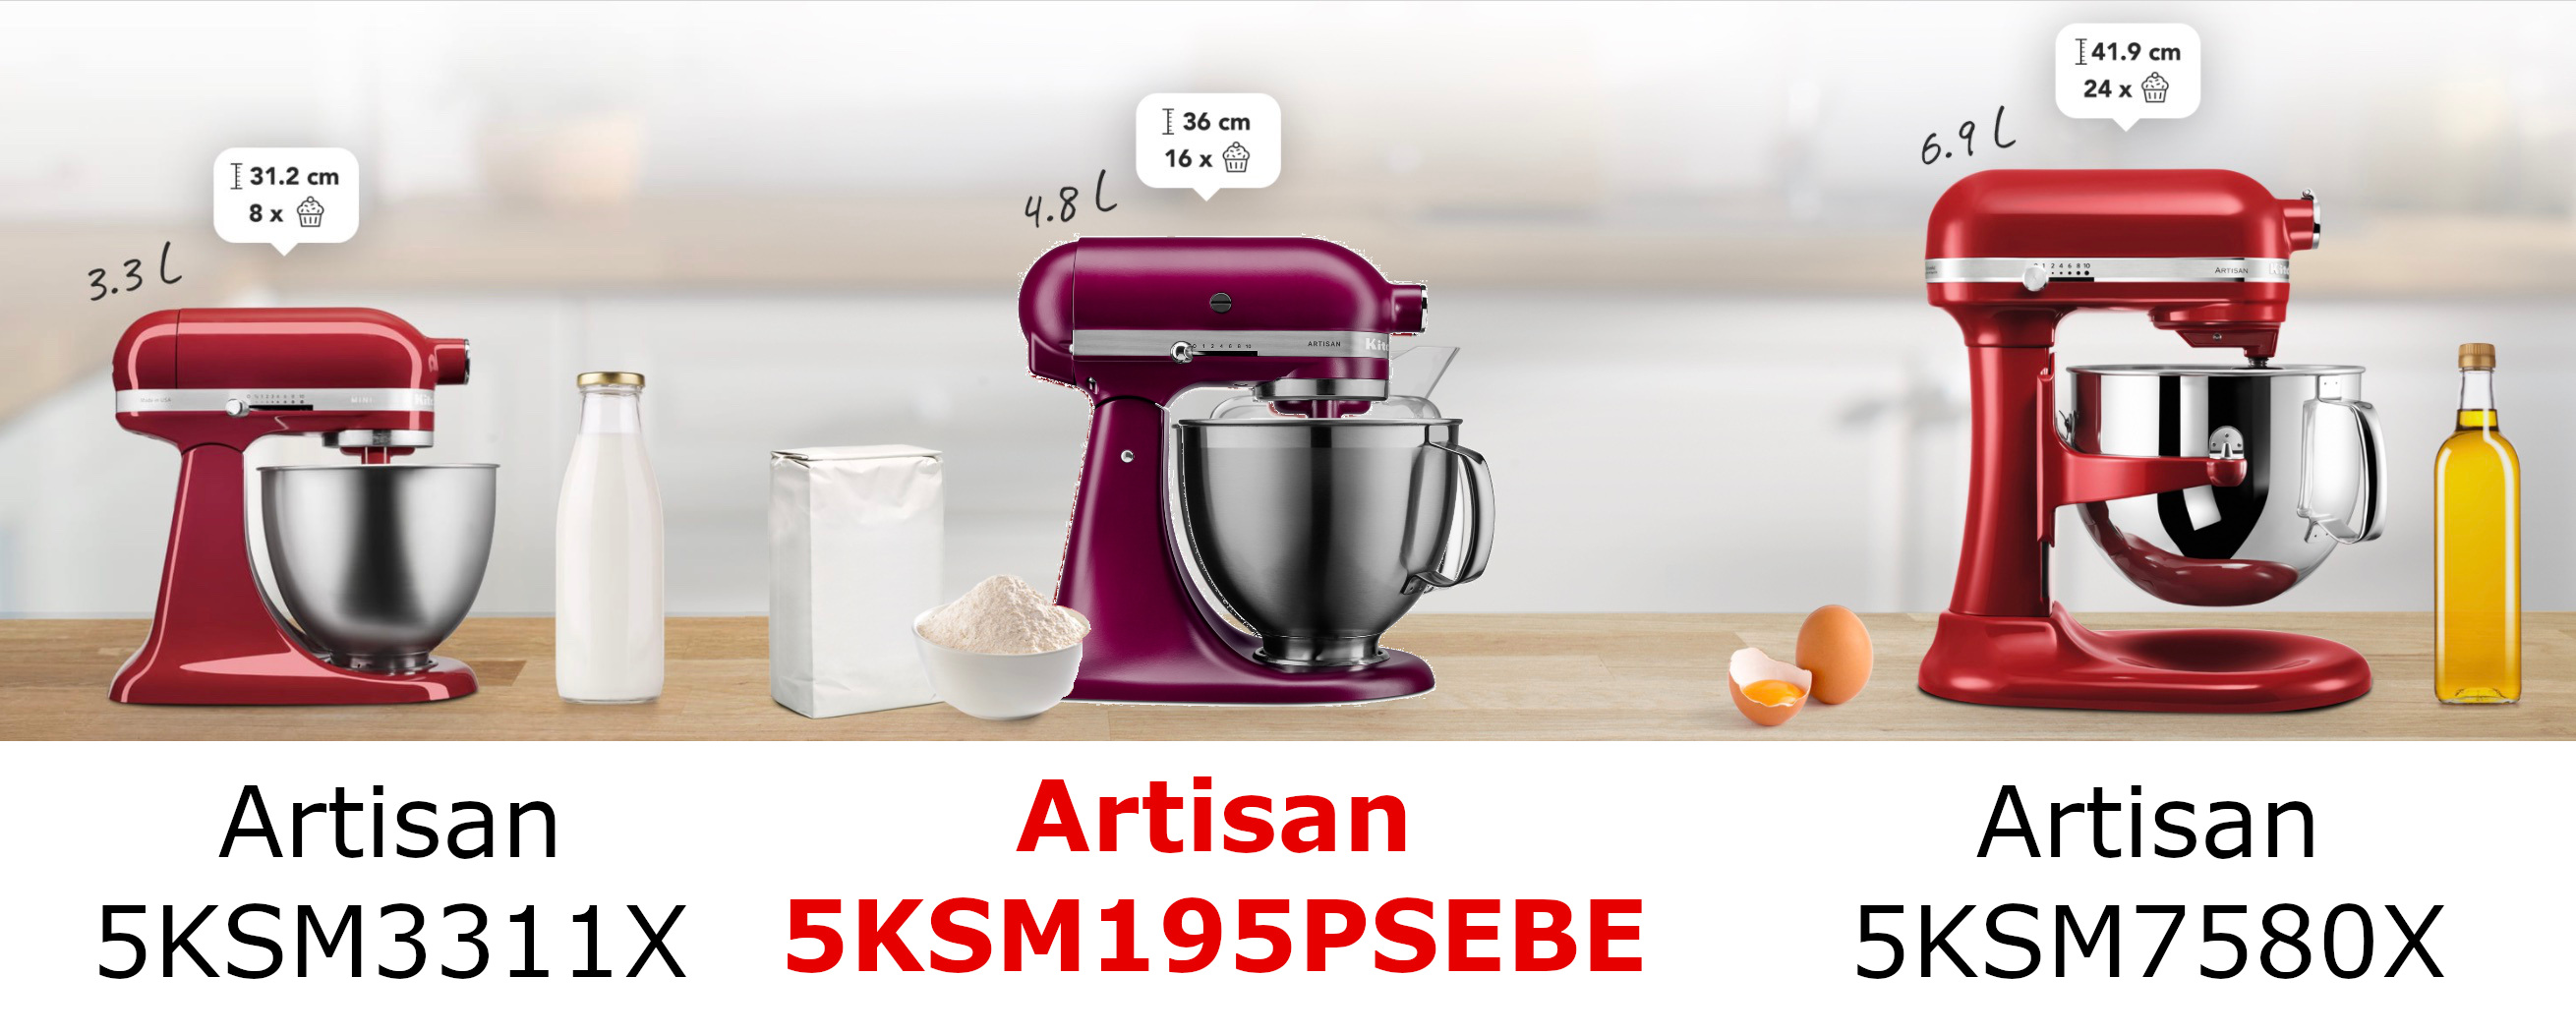 KitchenAid Artisan 5KSM195PSEBE comparé avec les autres modèles